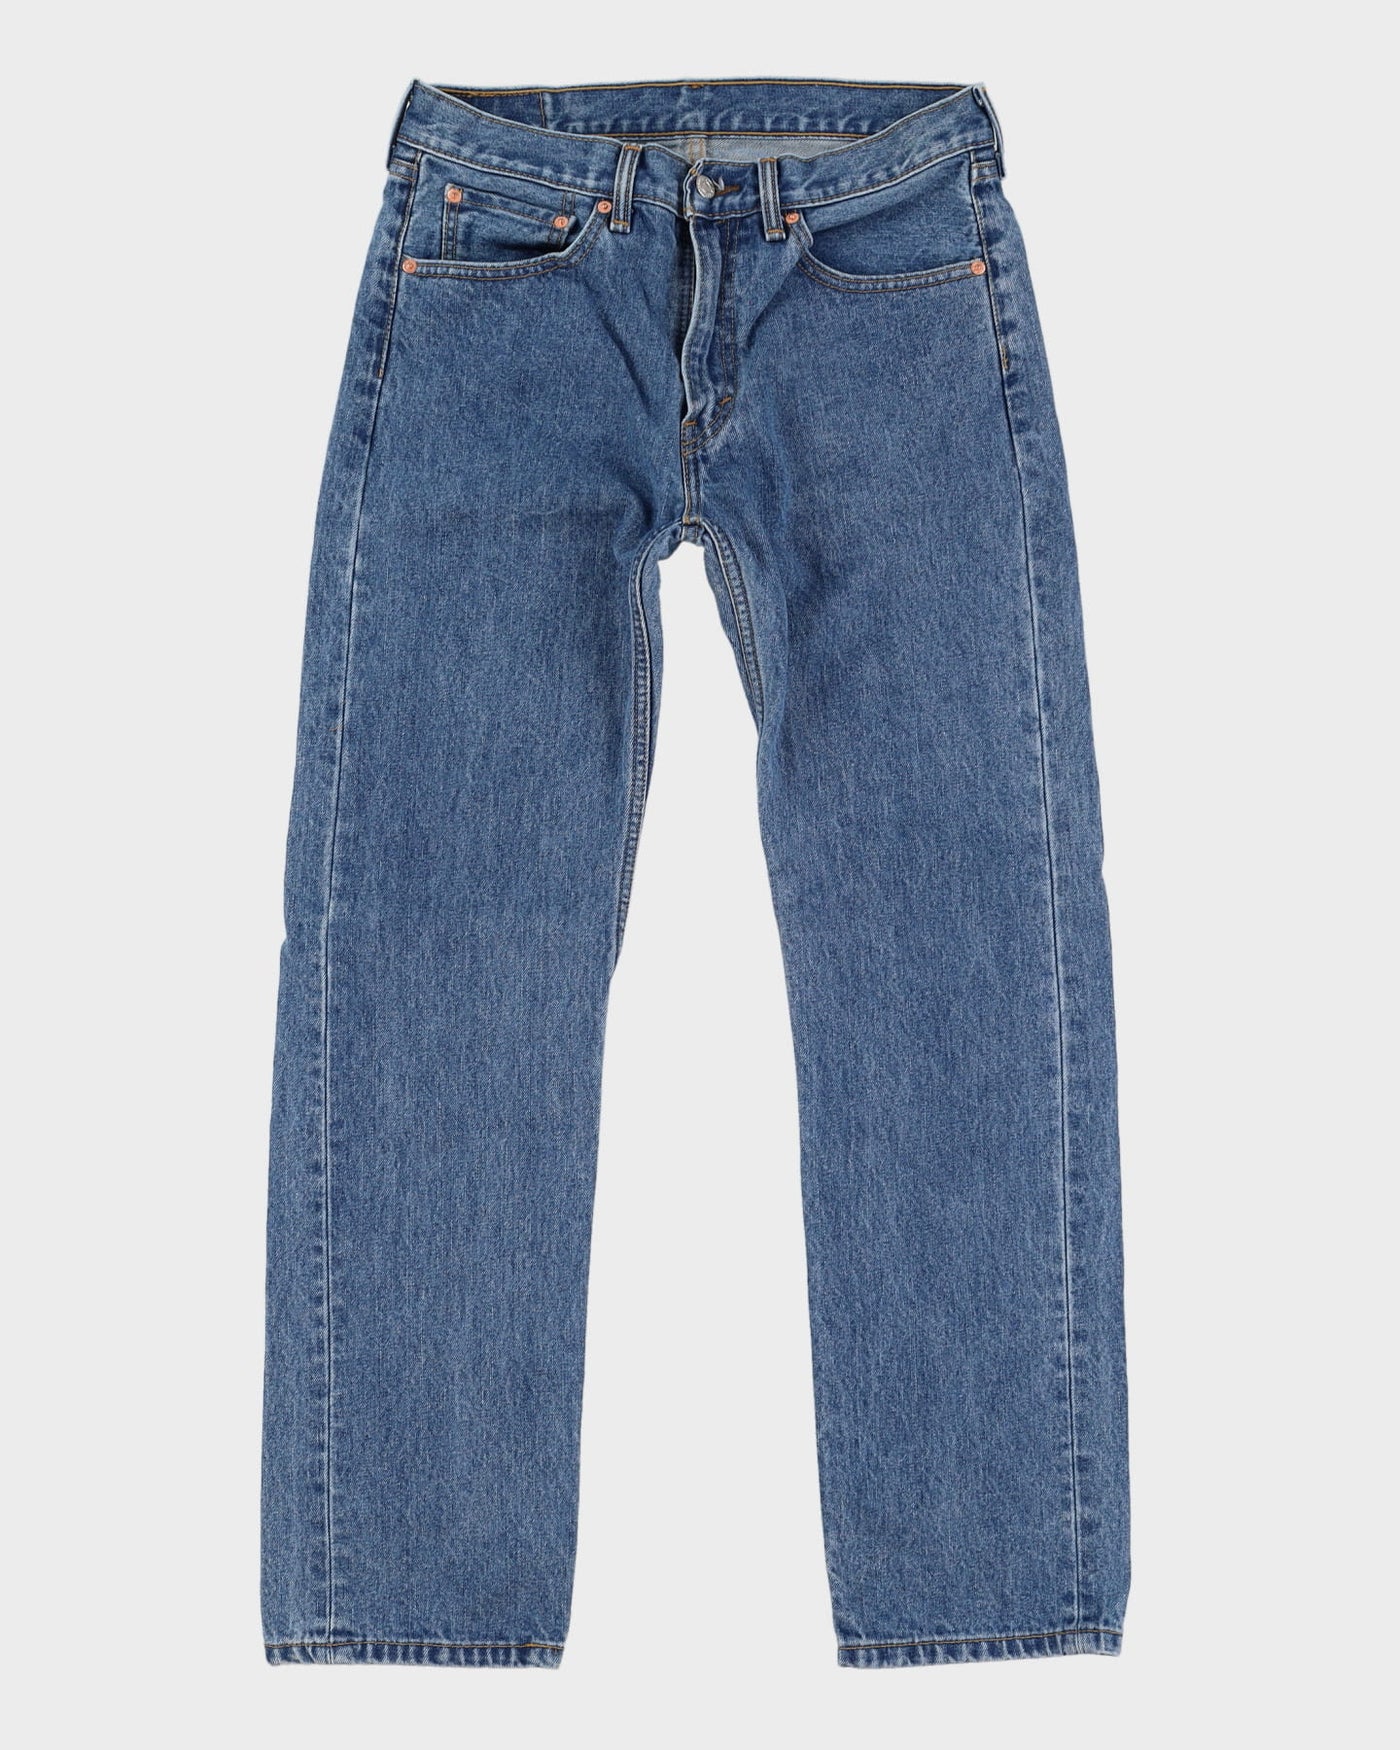 Levi's 505 Blue Jeans - W34 L31